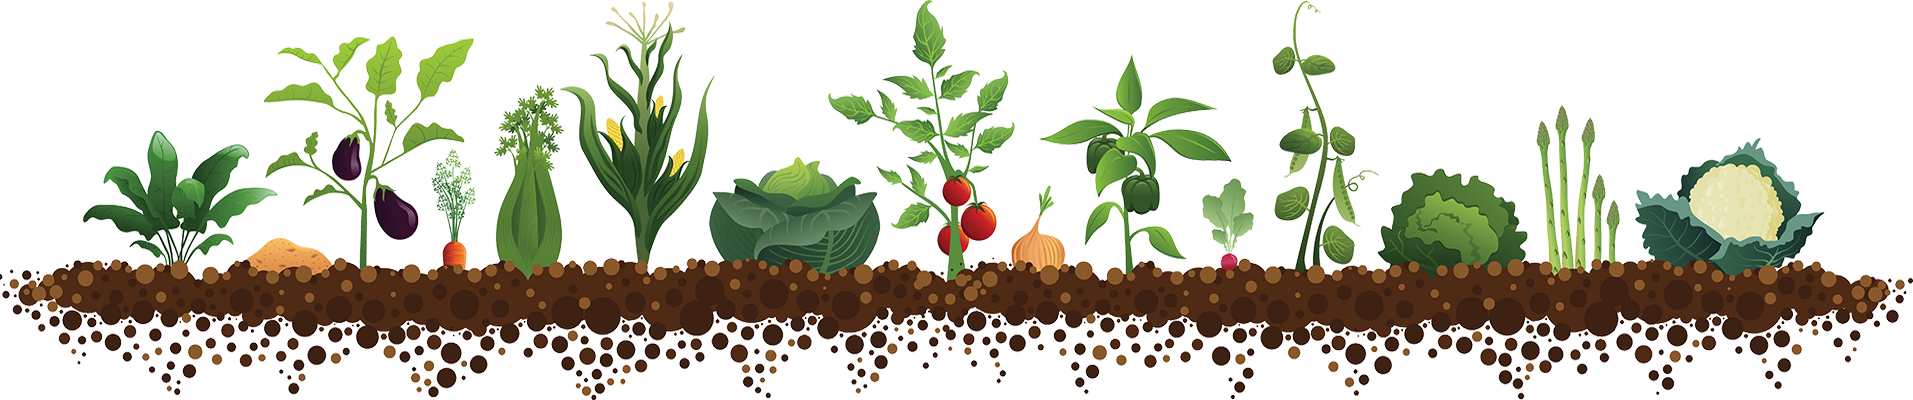 Посів насіння шпинату в грунт травень 2020 коли сіяти, висаджувати насіння в теплицю, місячний календар